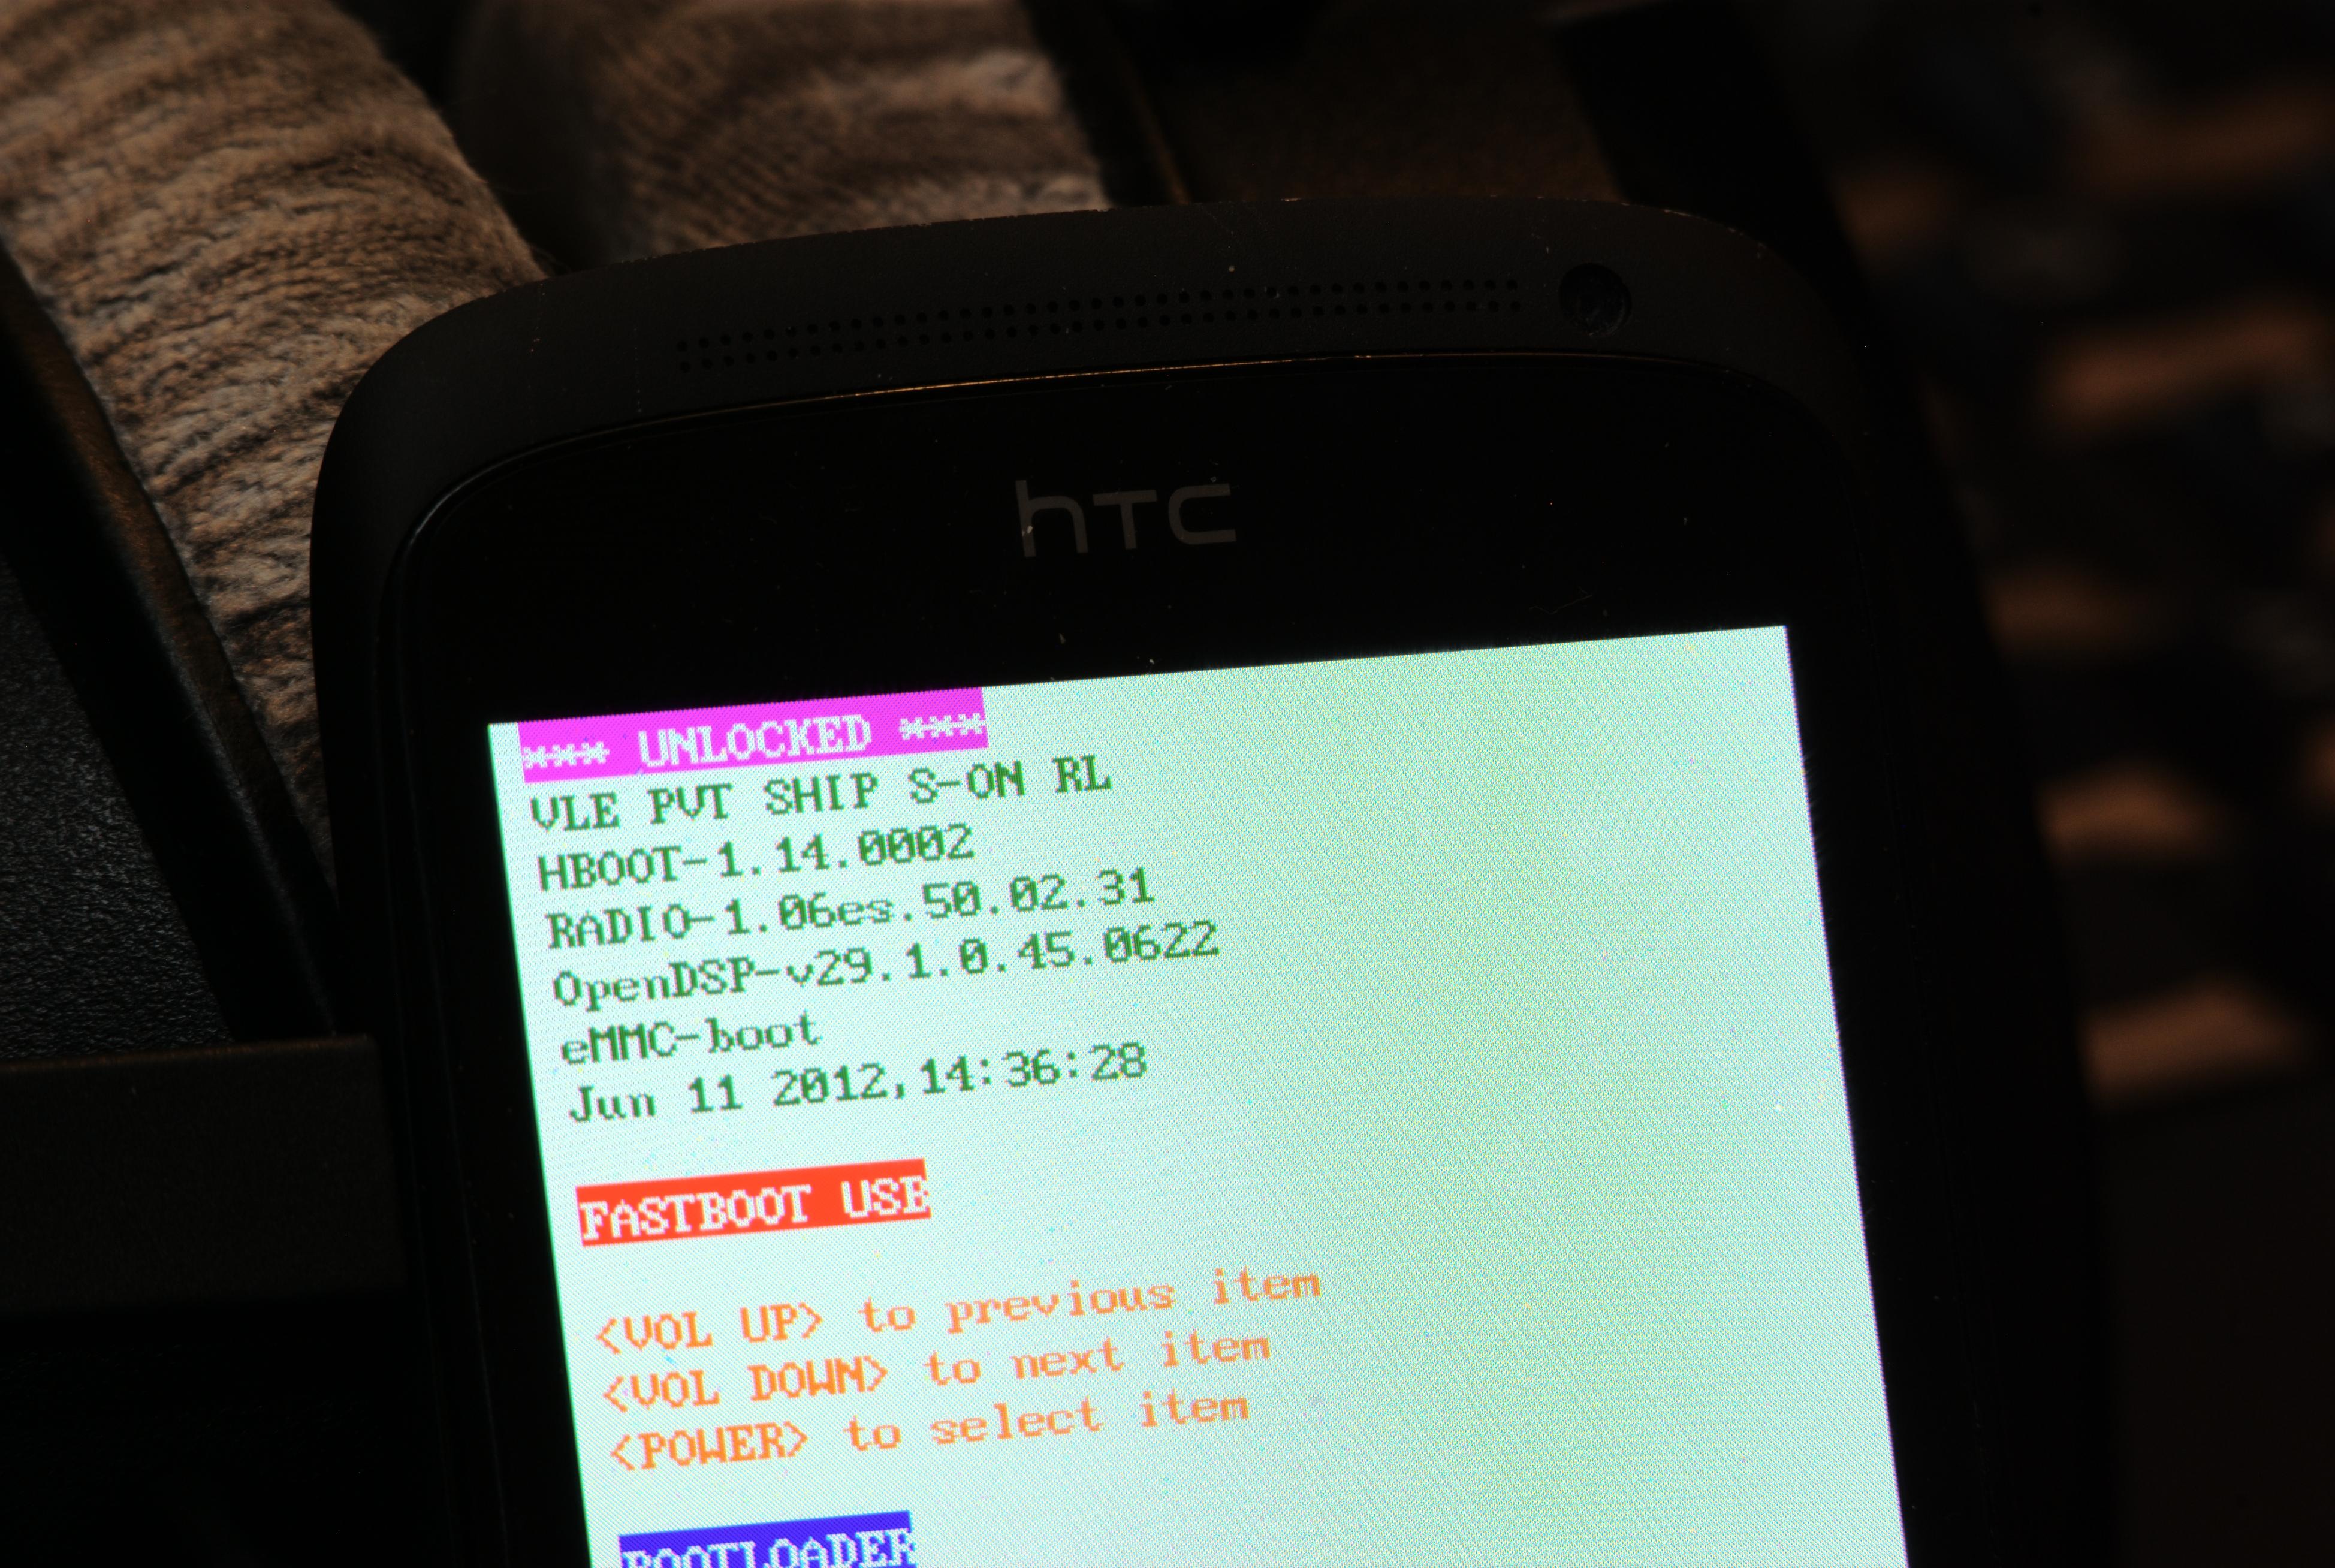 Når bootloaderen er låst opp i HTC One S, står det "UNLOCKED" øverst.Foto: Einar Eriksen